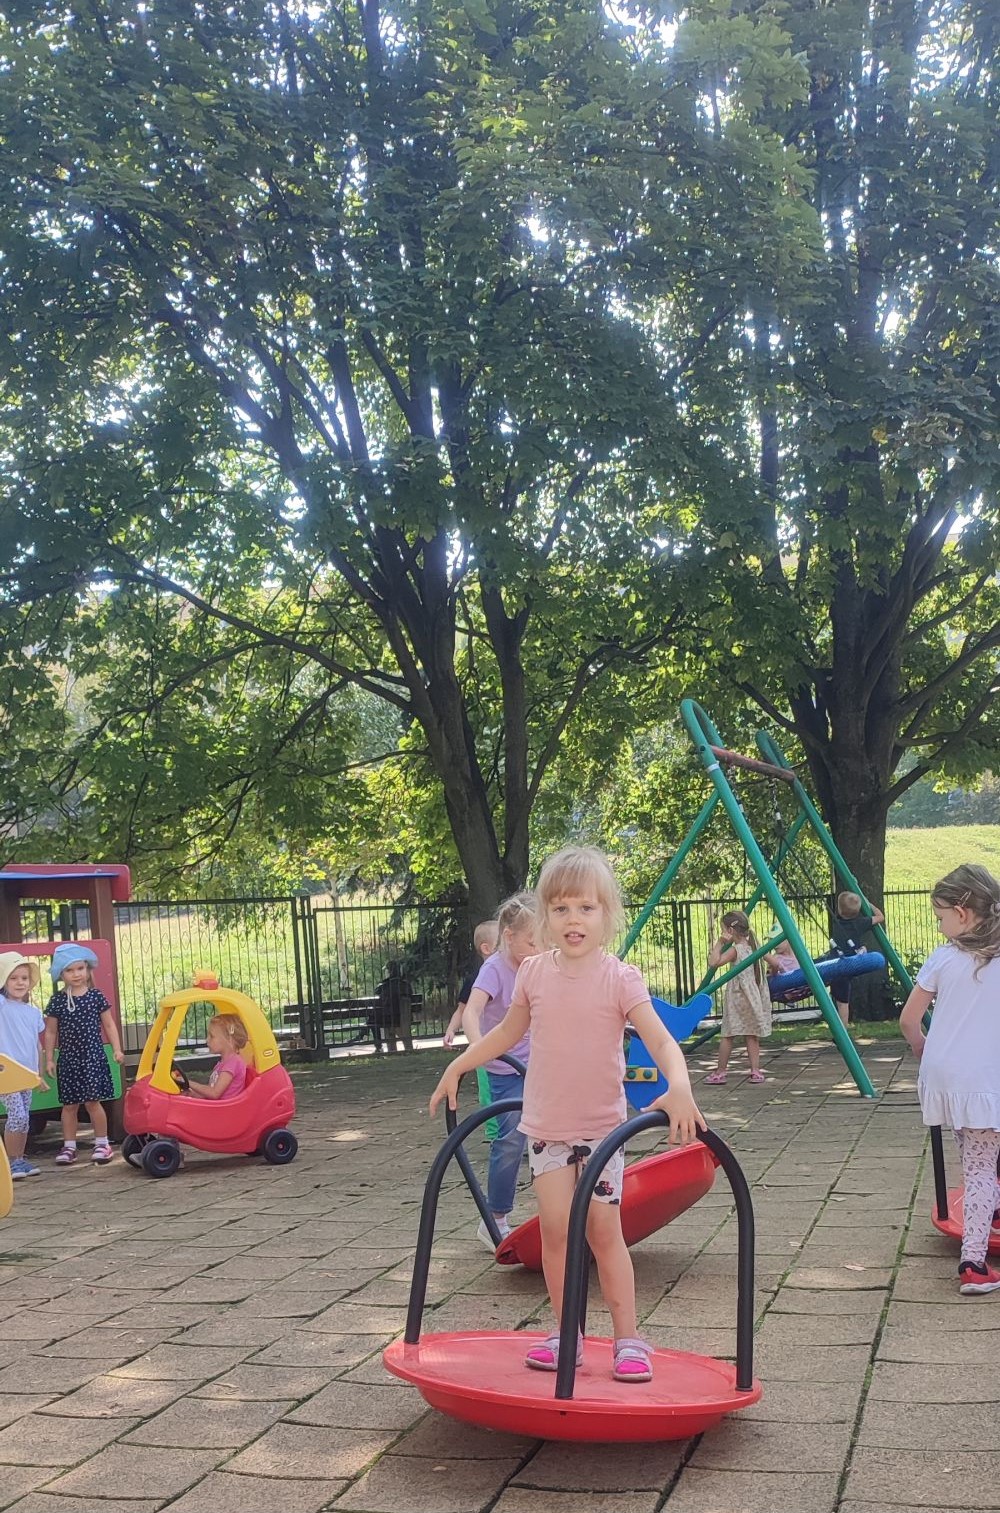 Dzieci bawią się na placu zabaw, dziewczynka stoi na platformie balansującej